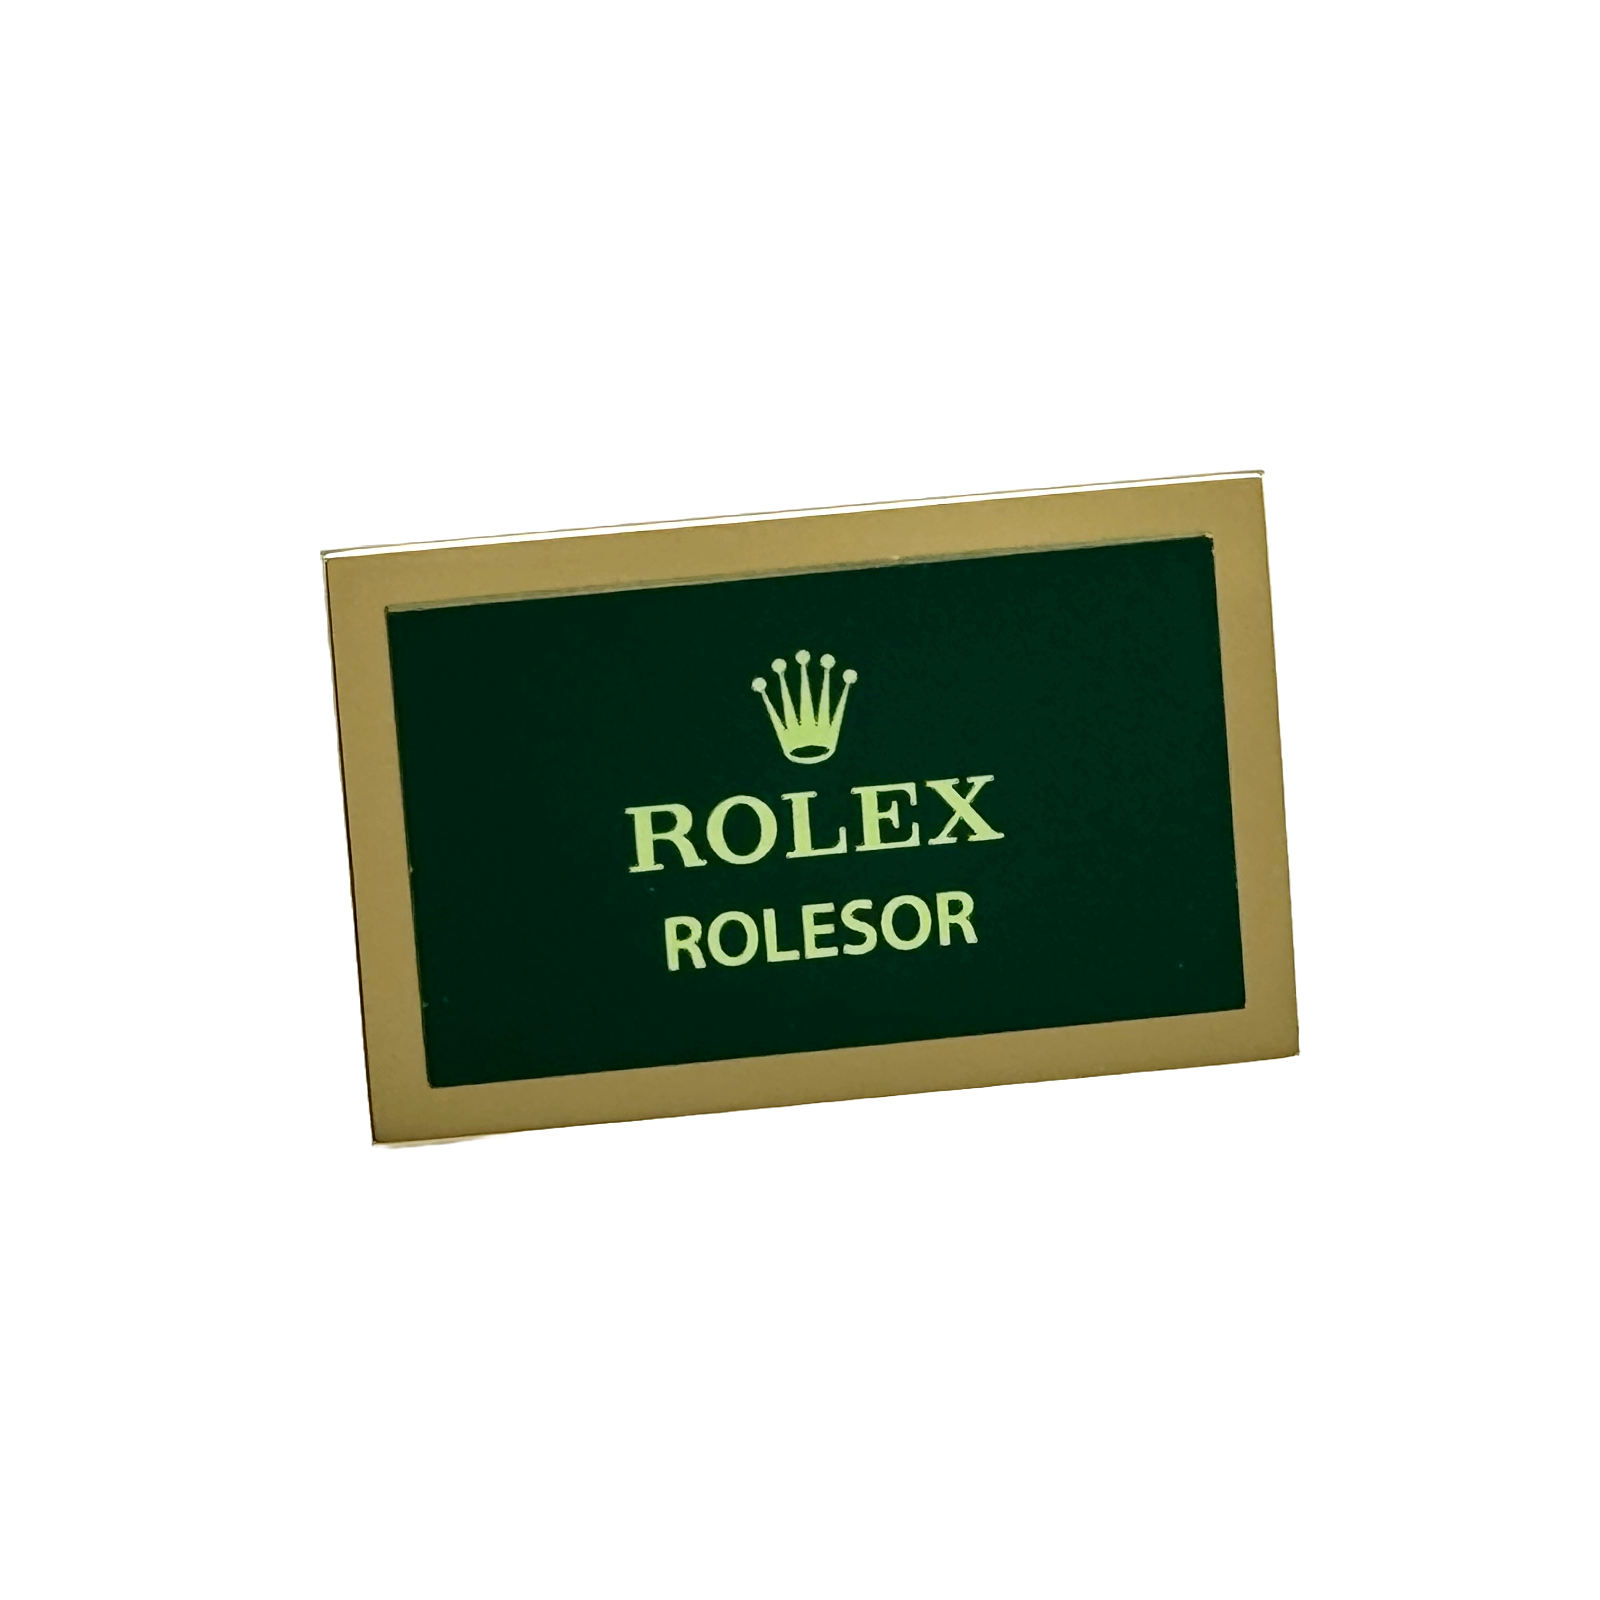 Rolex Rolesor Display Aufsteller Schild Konzessionär standee sign